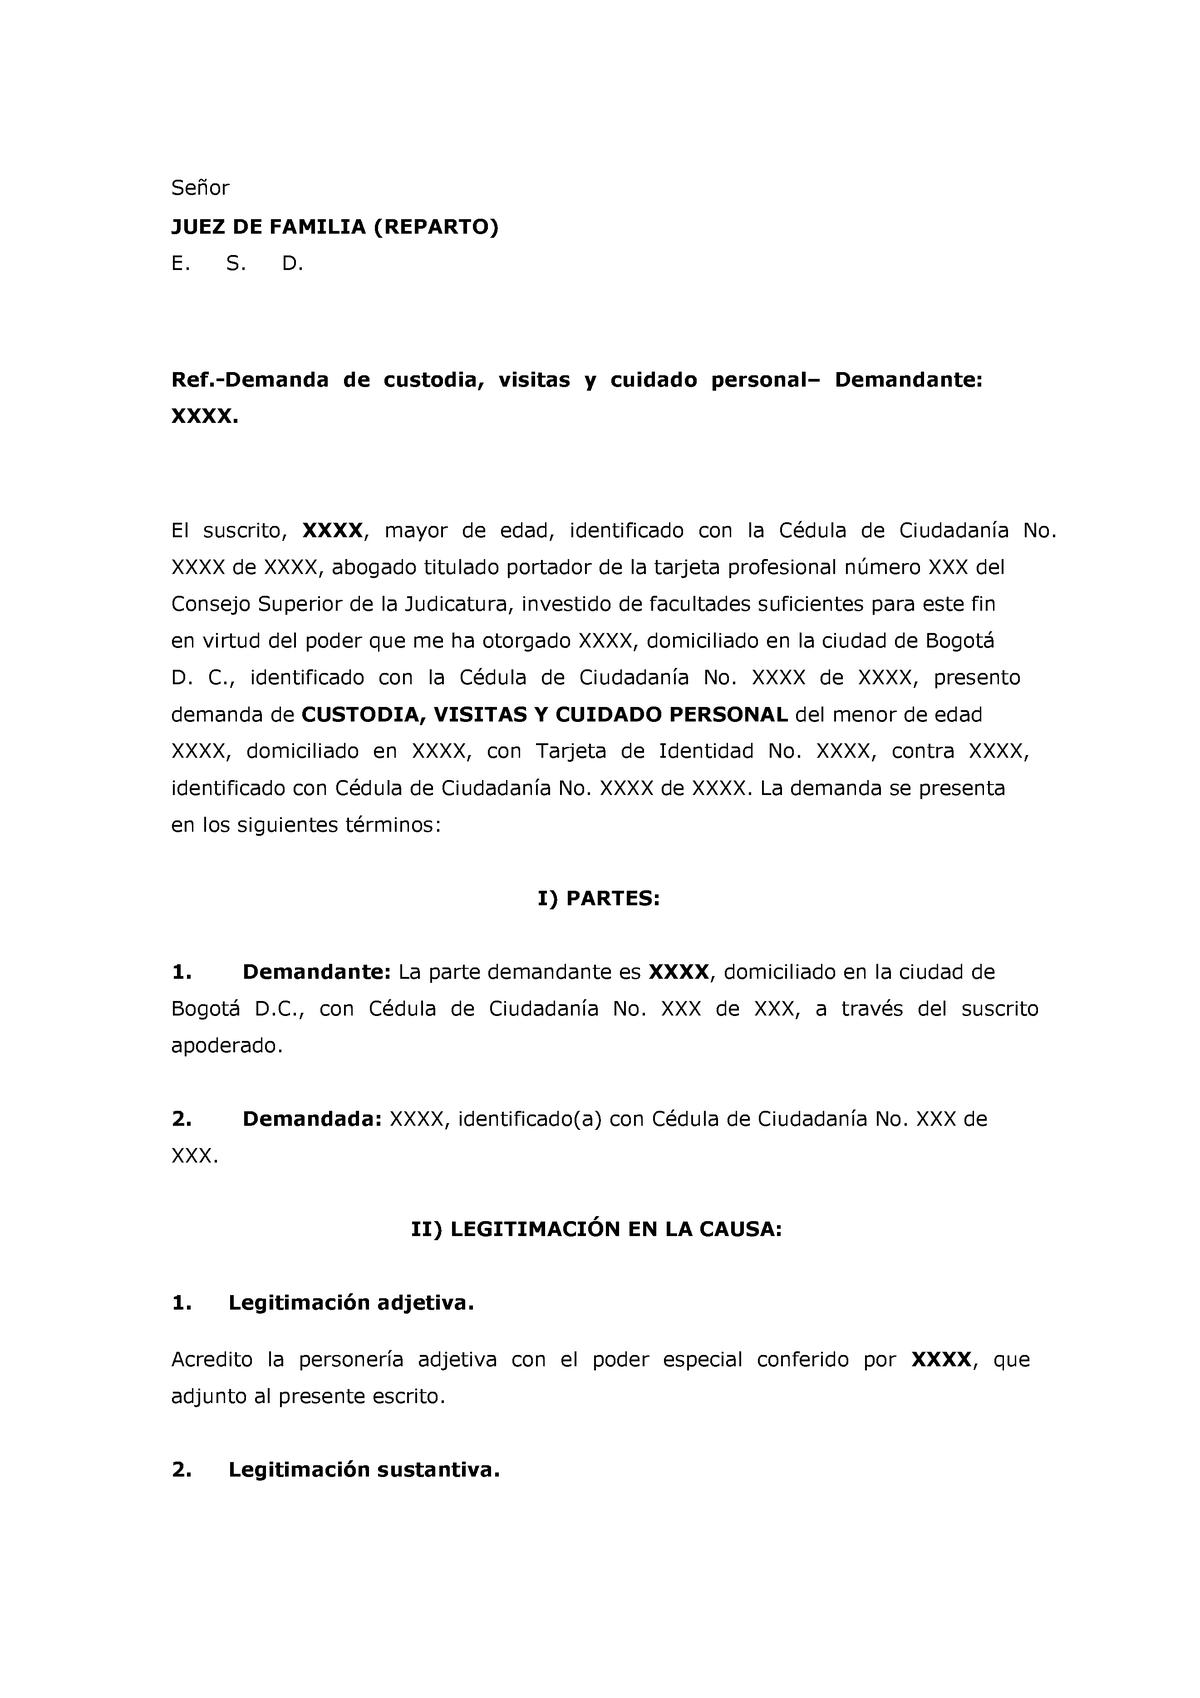 Modelo demanda de visitas custodia y cuidado personal - Señor JUEZ DE  FAMILIA (REPARTO) E. S. D. - Studocu